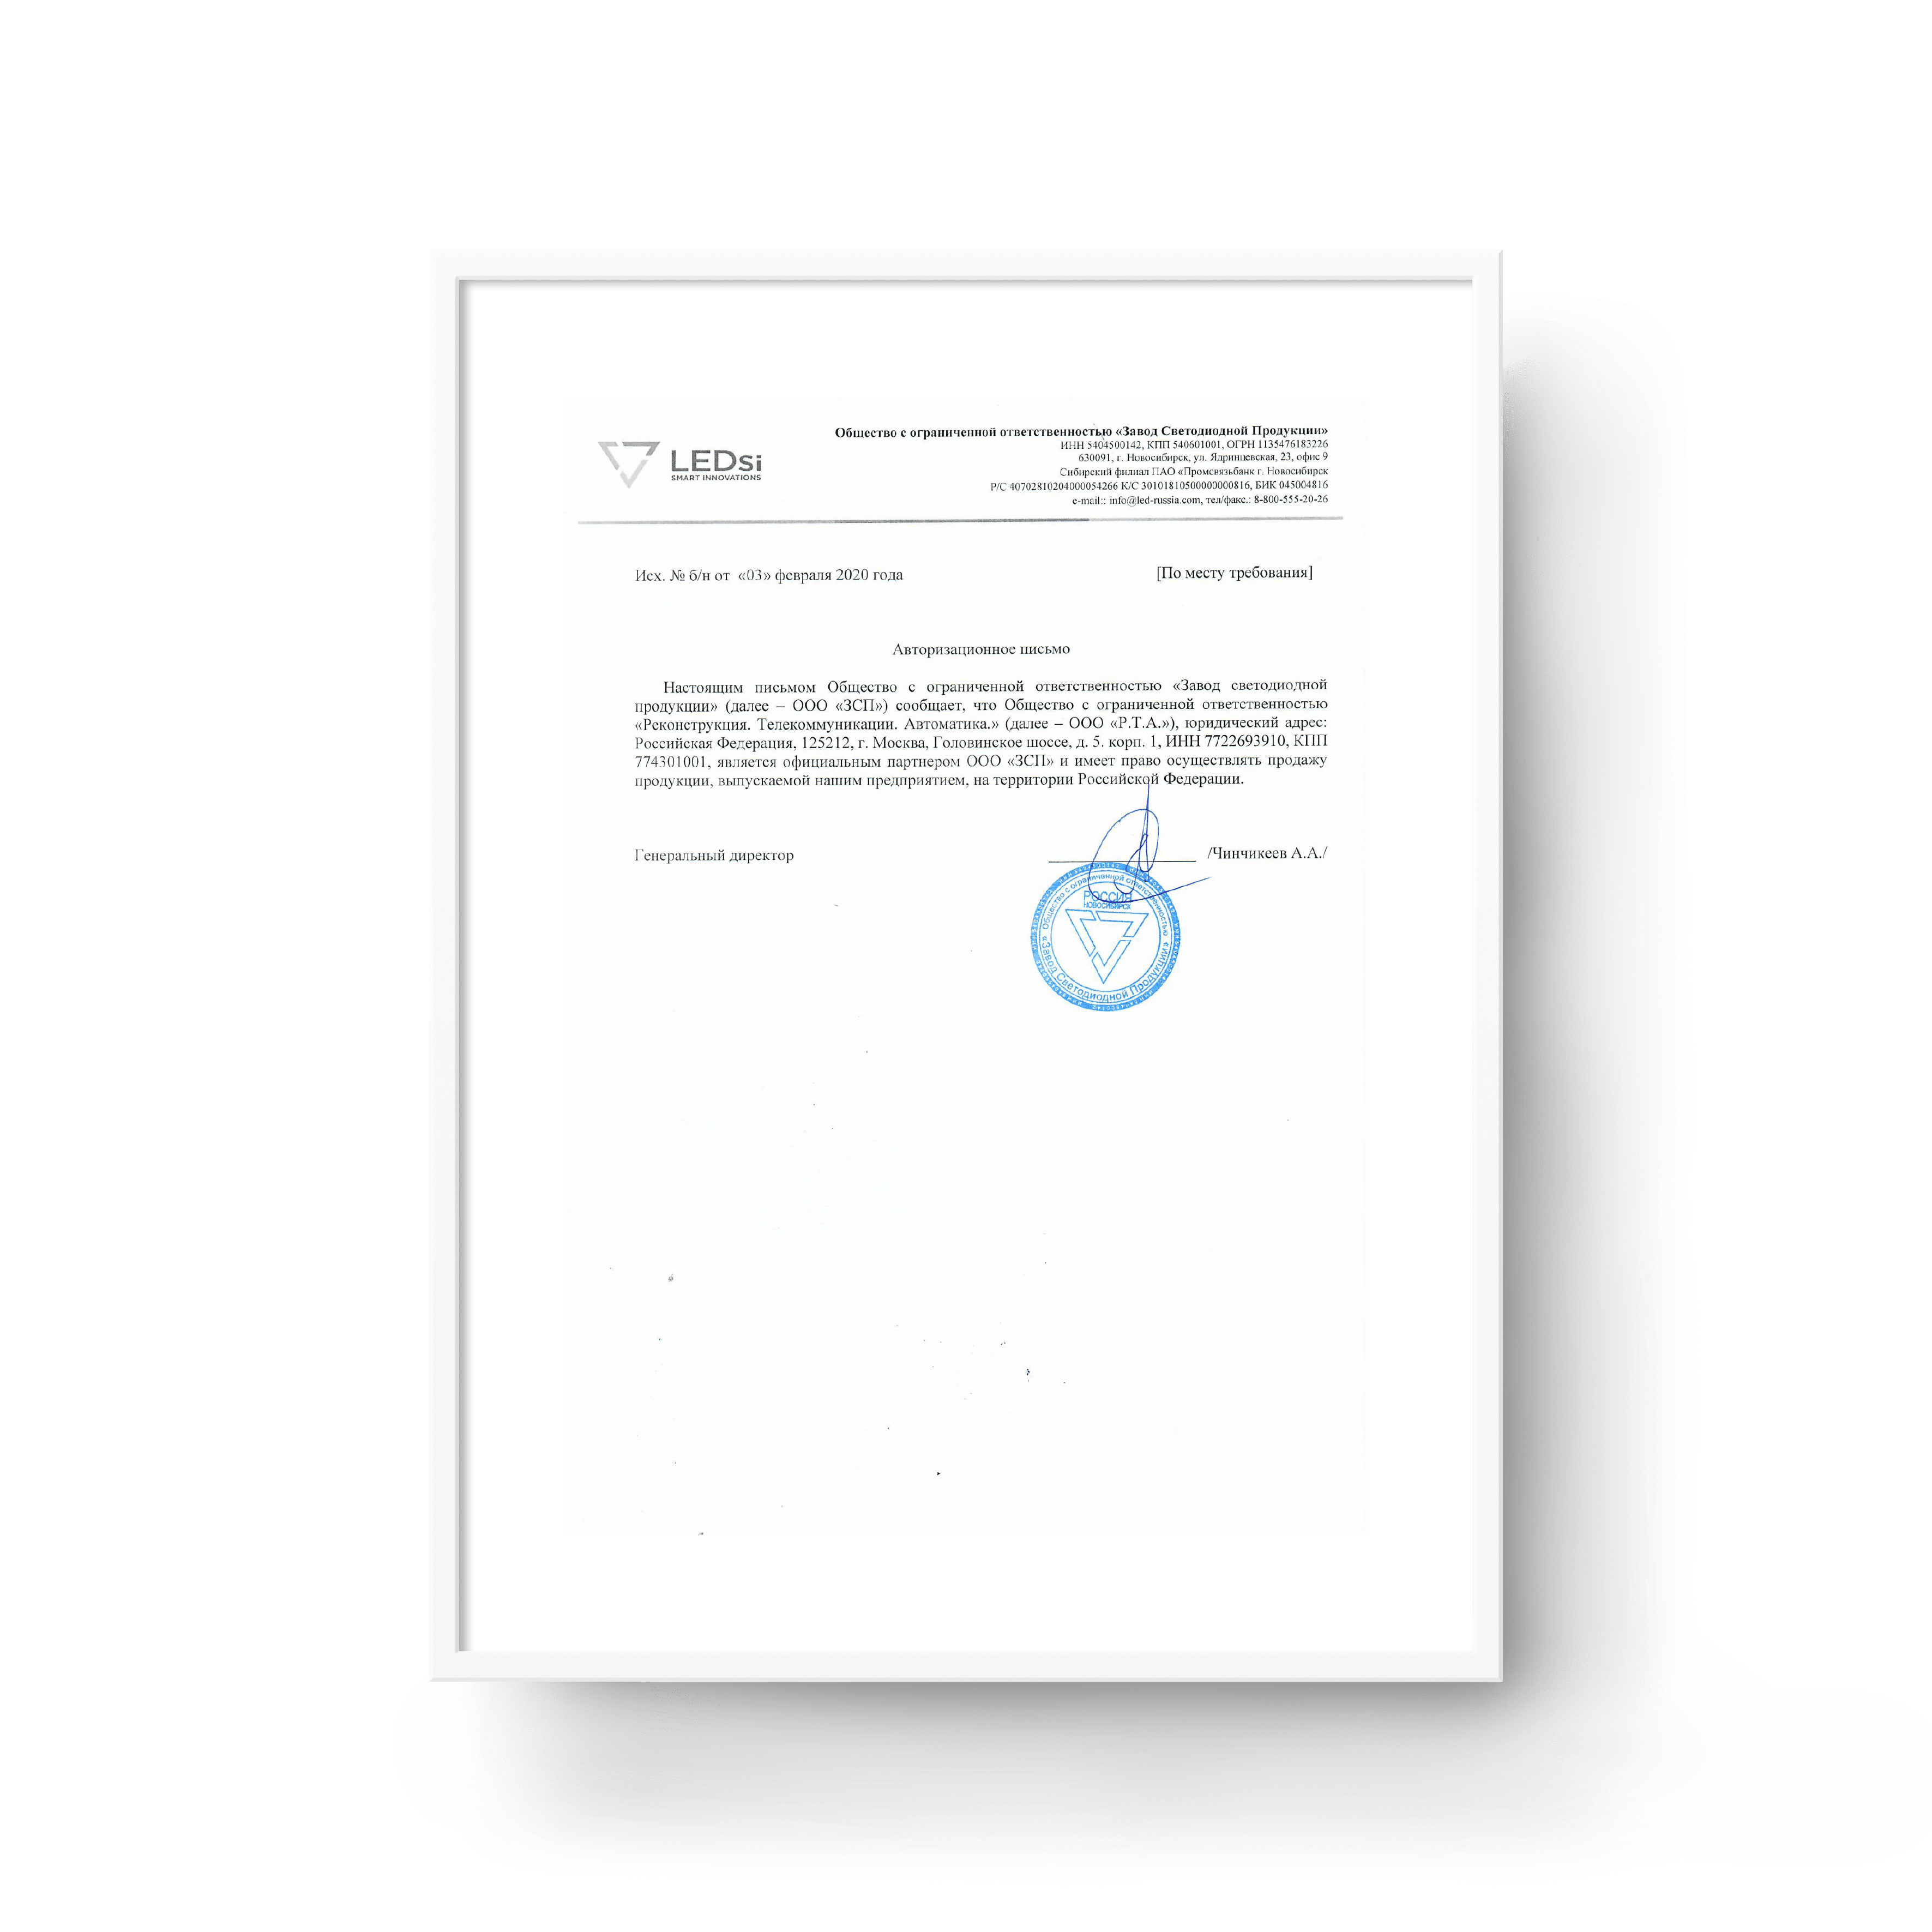 ГК «ВИАТЕК» получила статус официального партнера ООО «ЗСП»